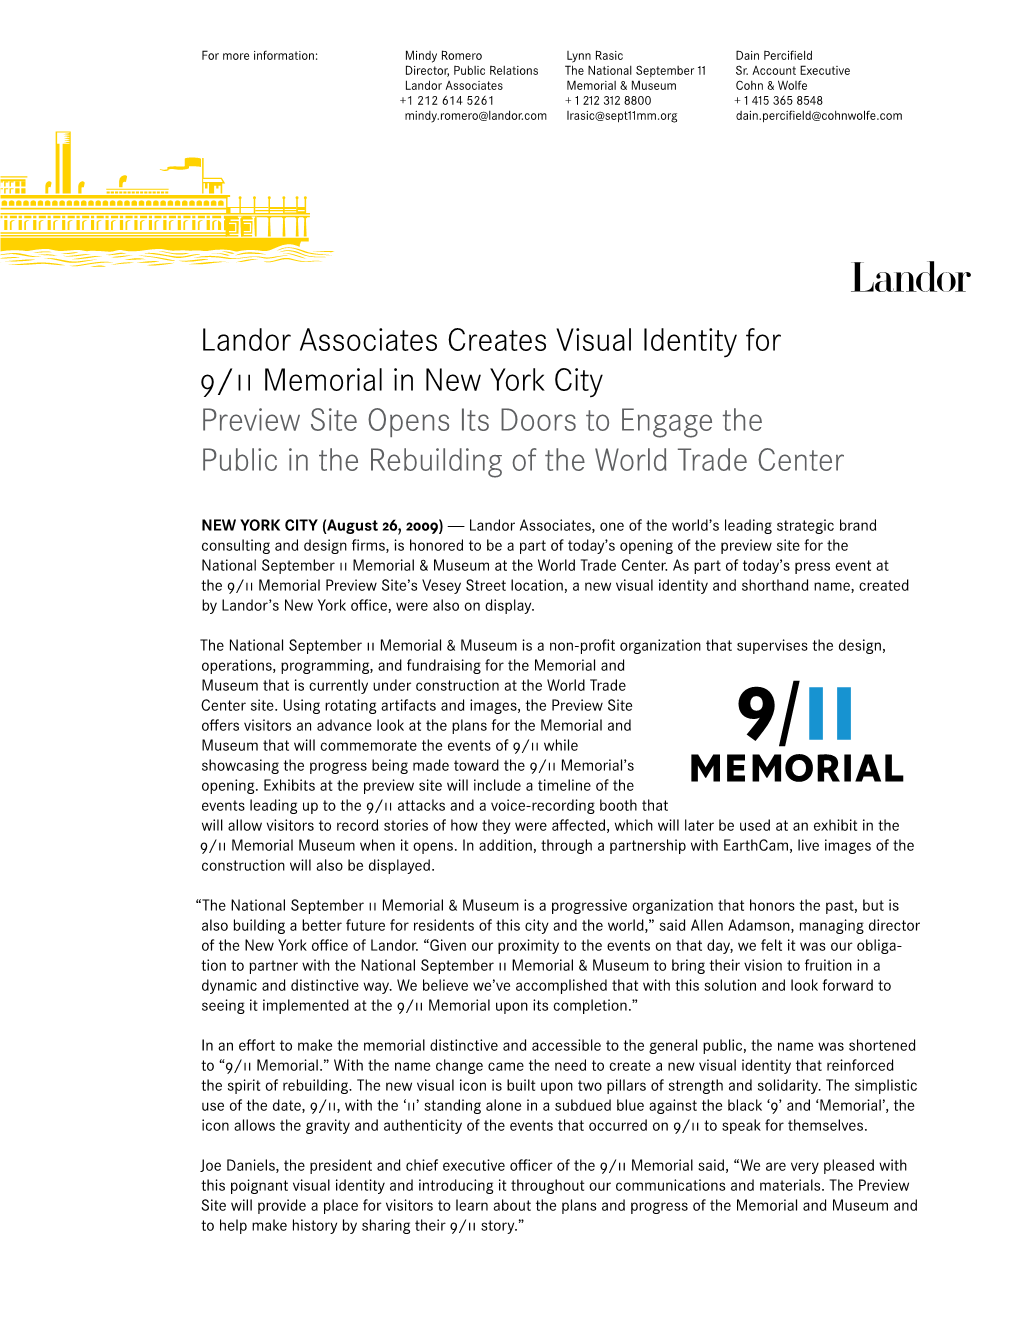 Landor Associates Creates Visual Identity for 9/11 Memorial in New